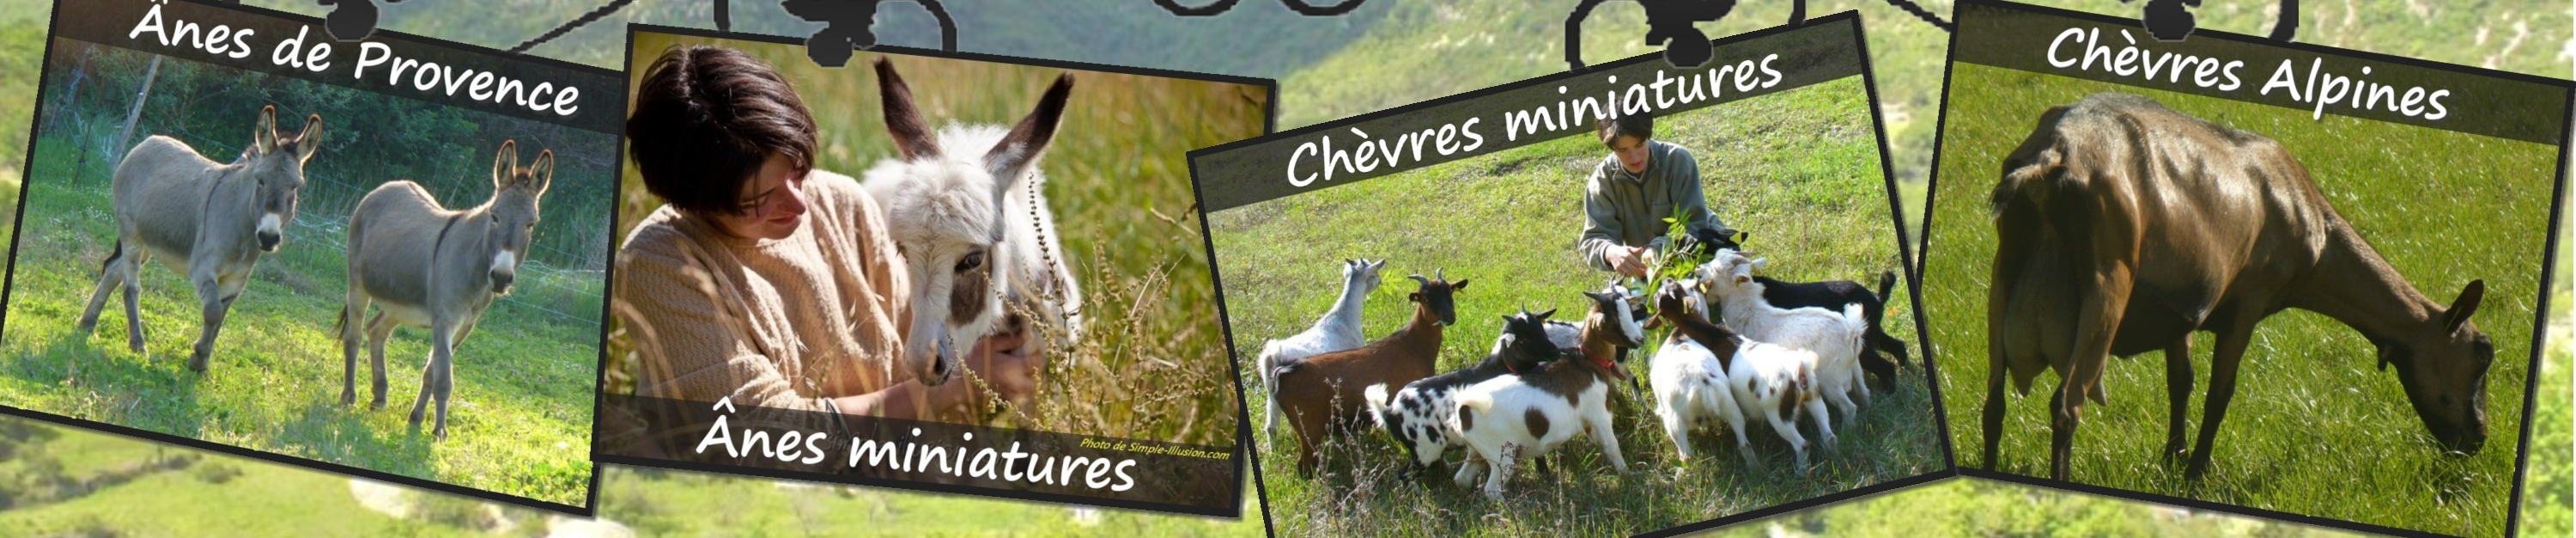 www.ferme-des-tourelles.net    ~   Pastoralisme minichèvres 2016